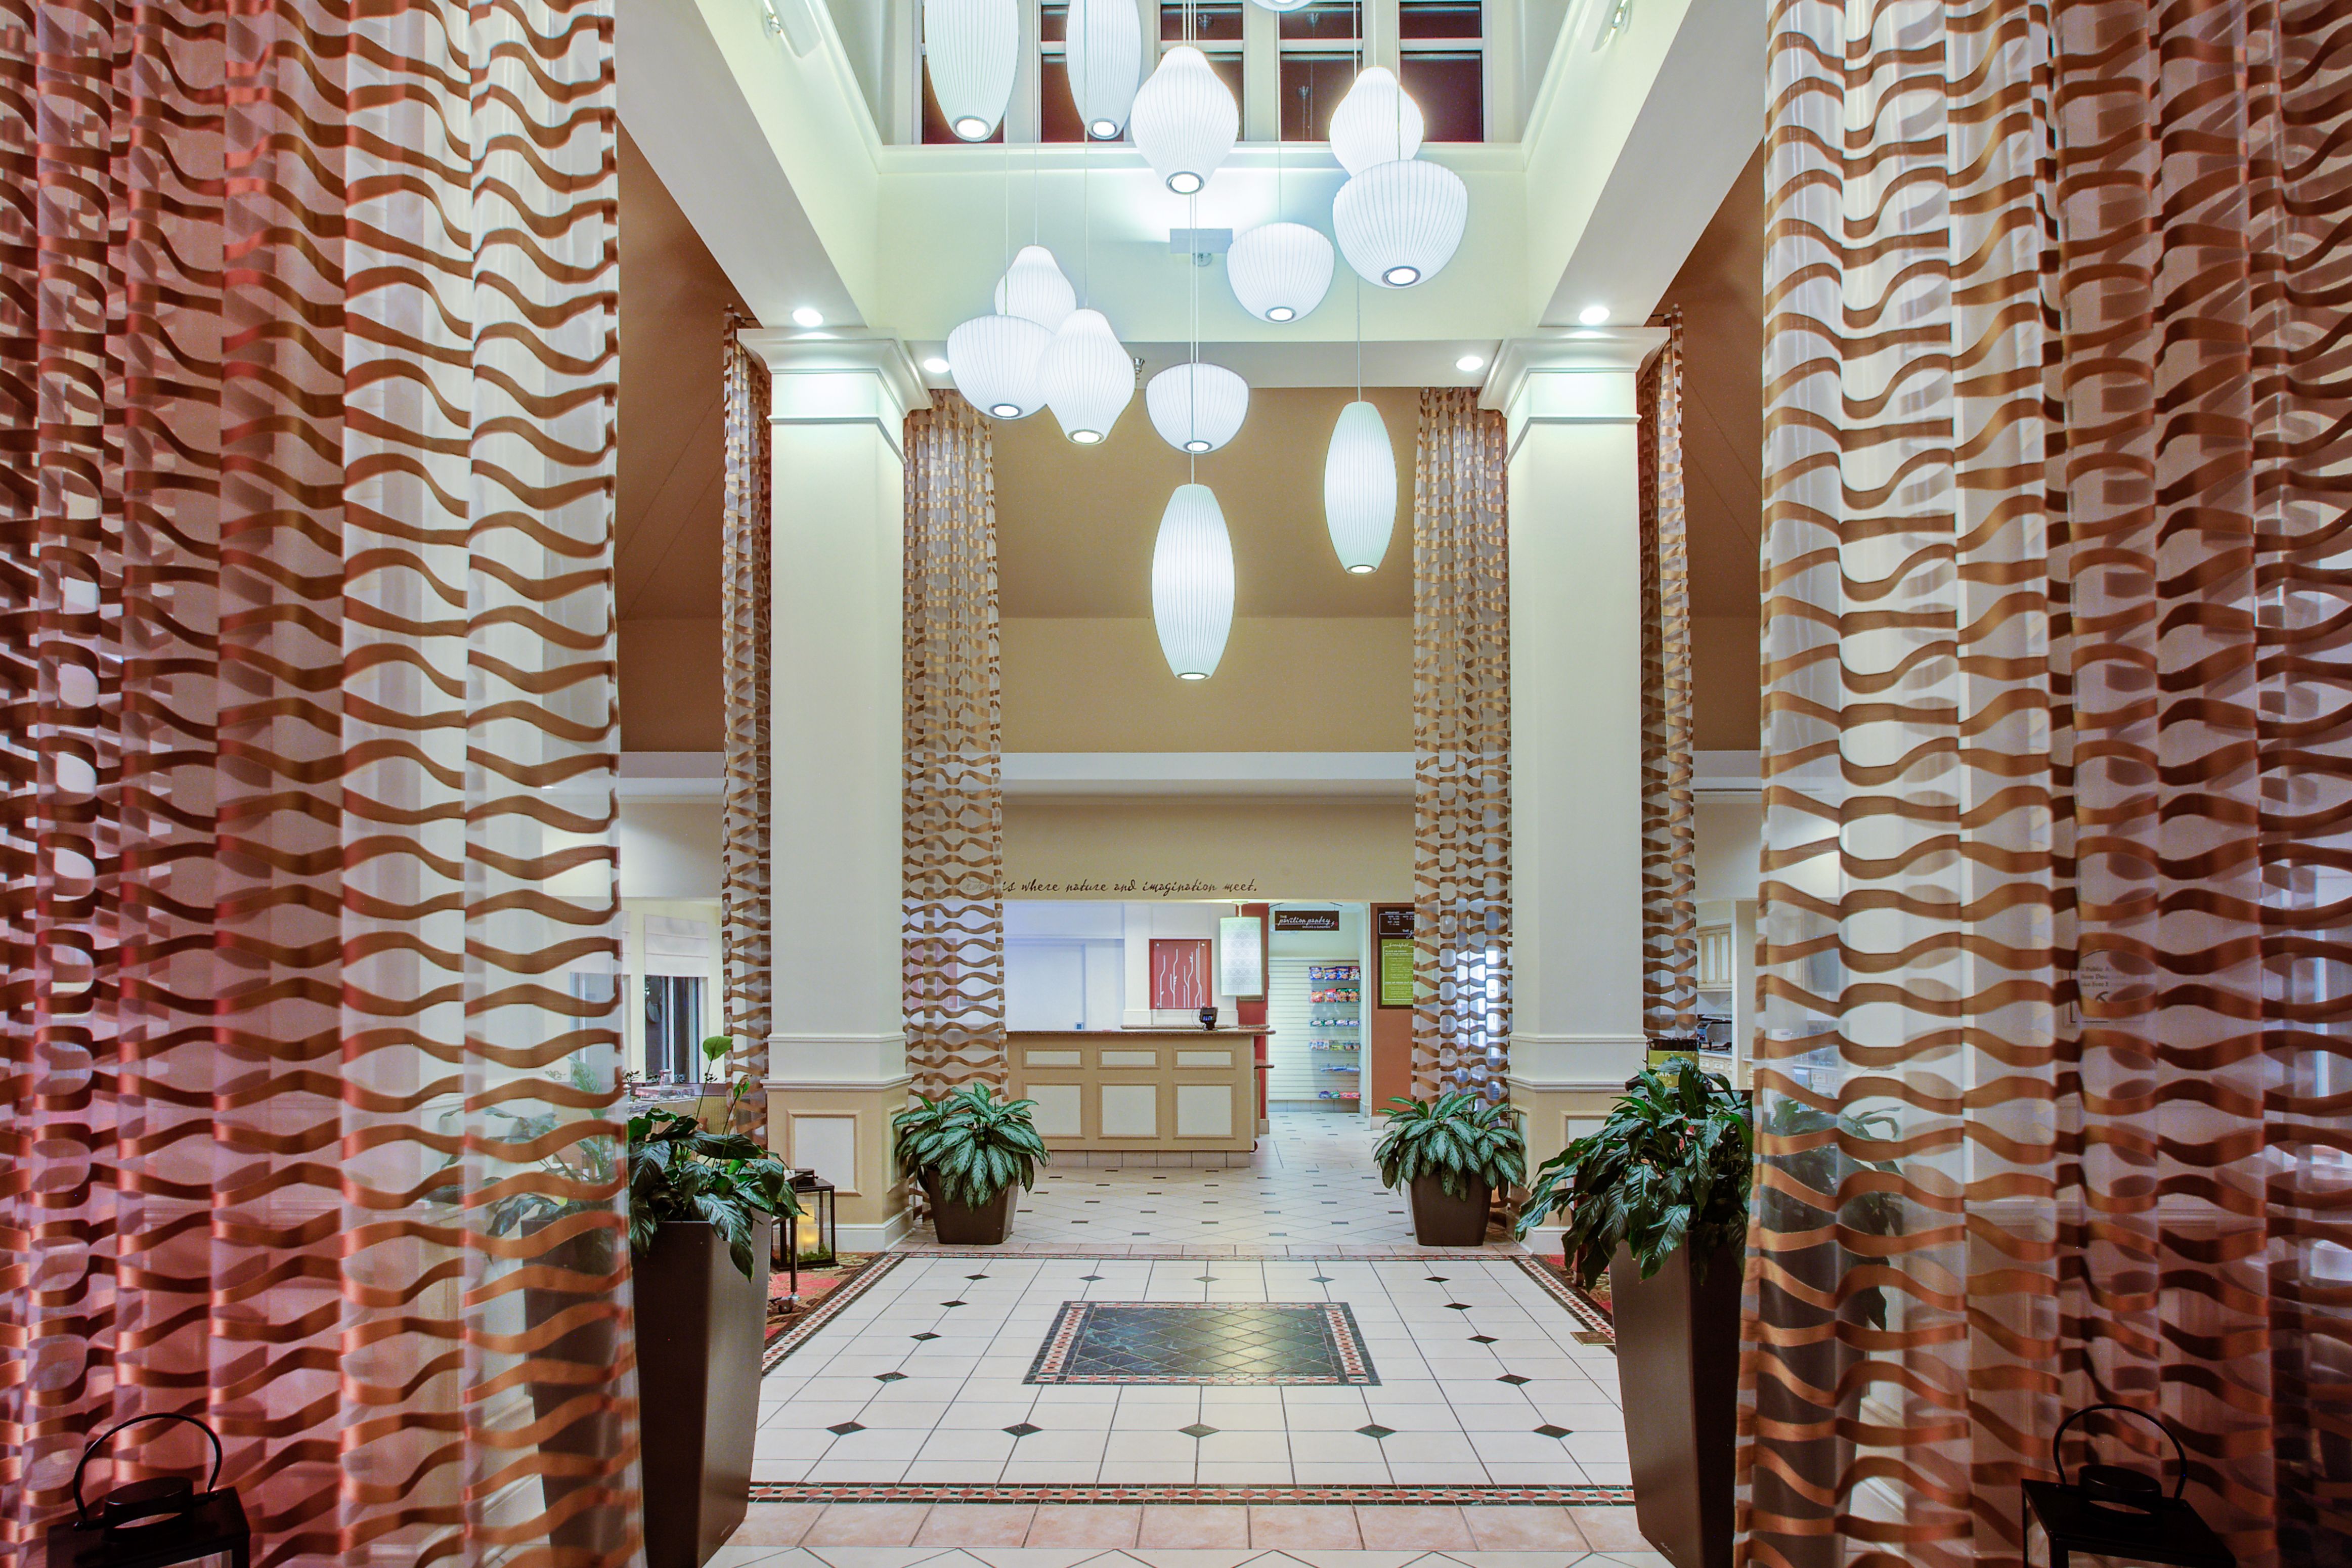 Hotel main entrance into lobby